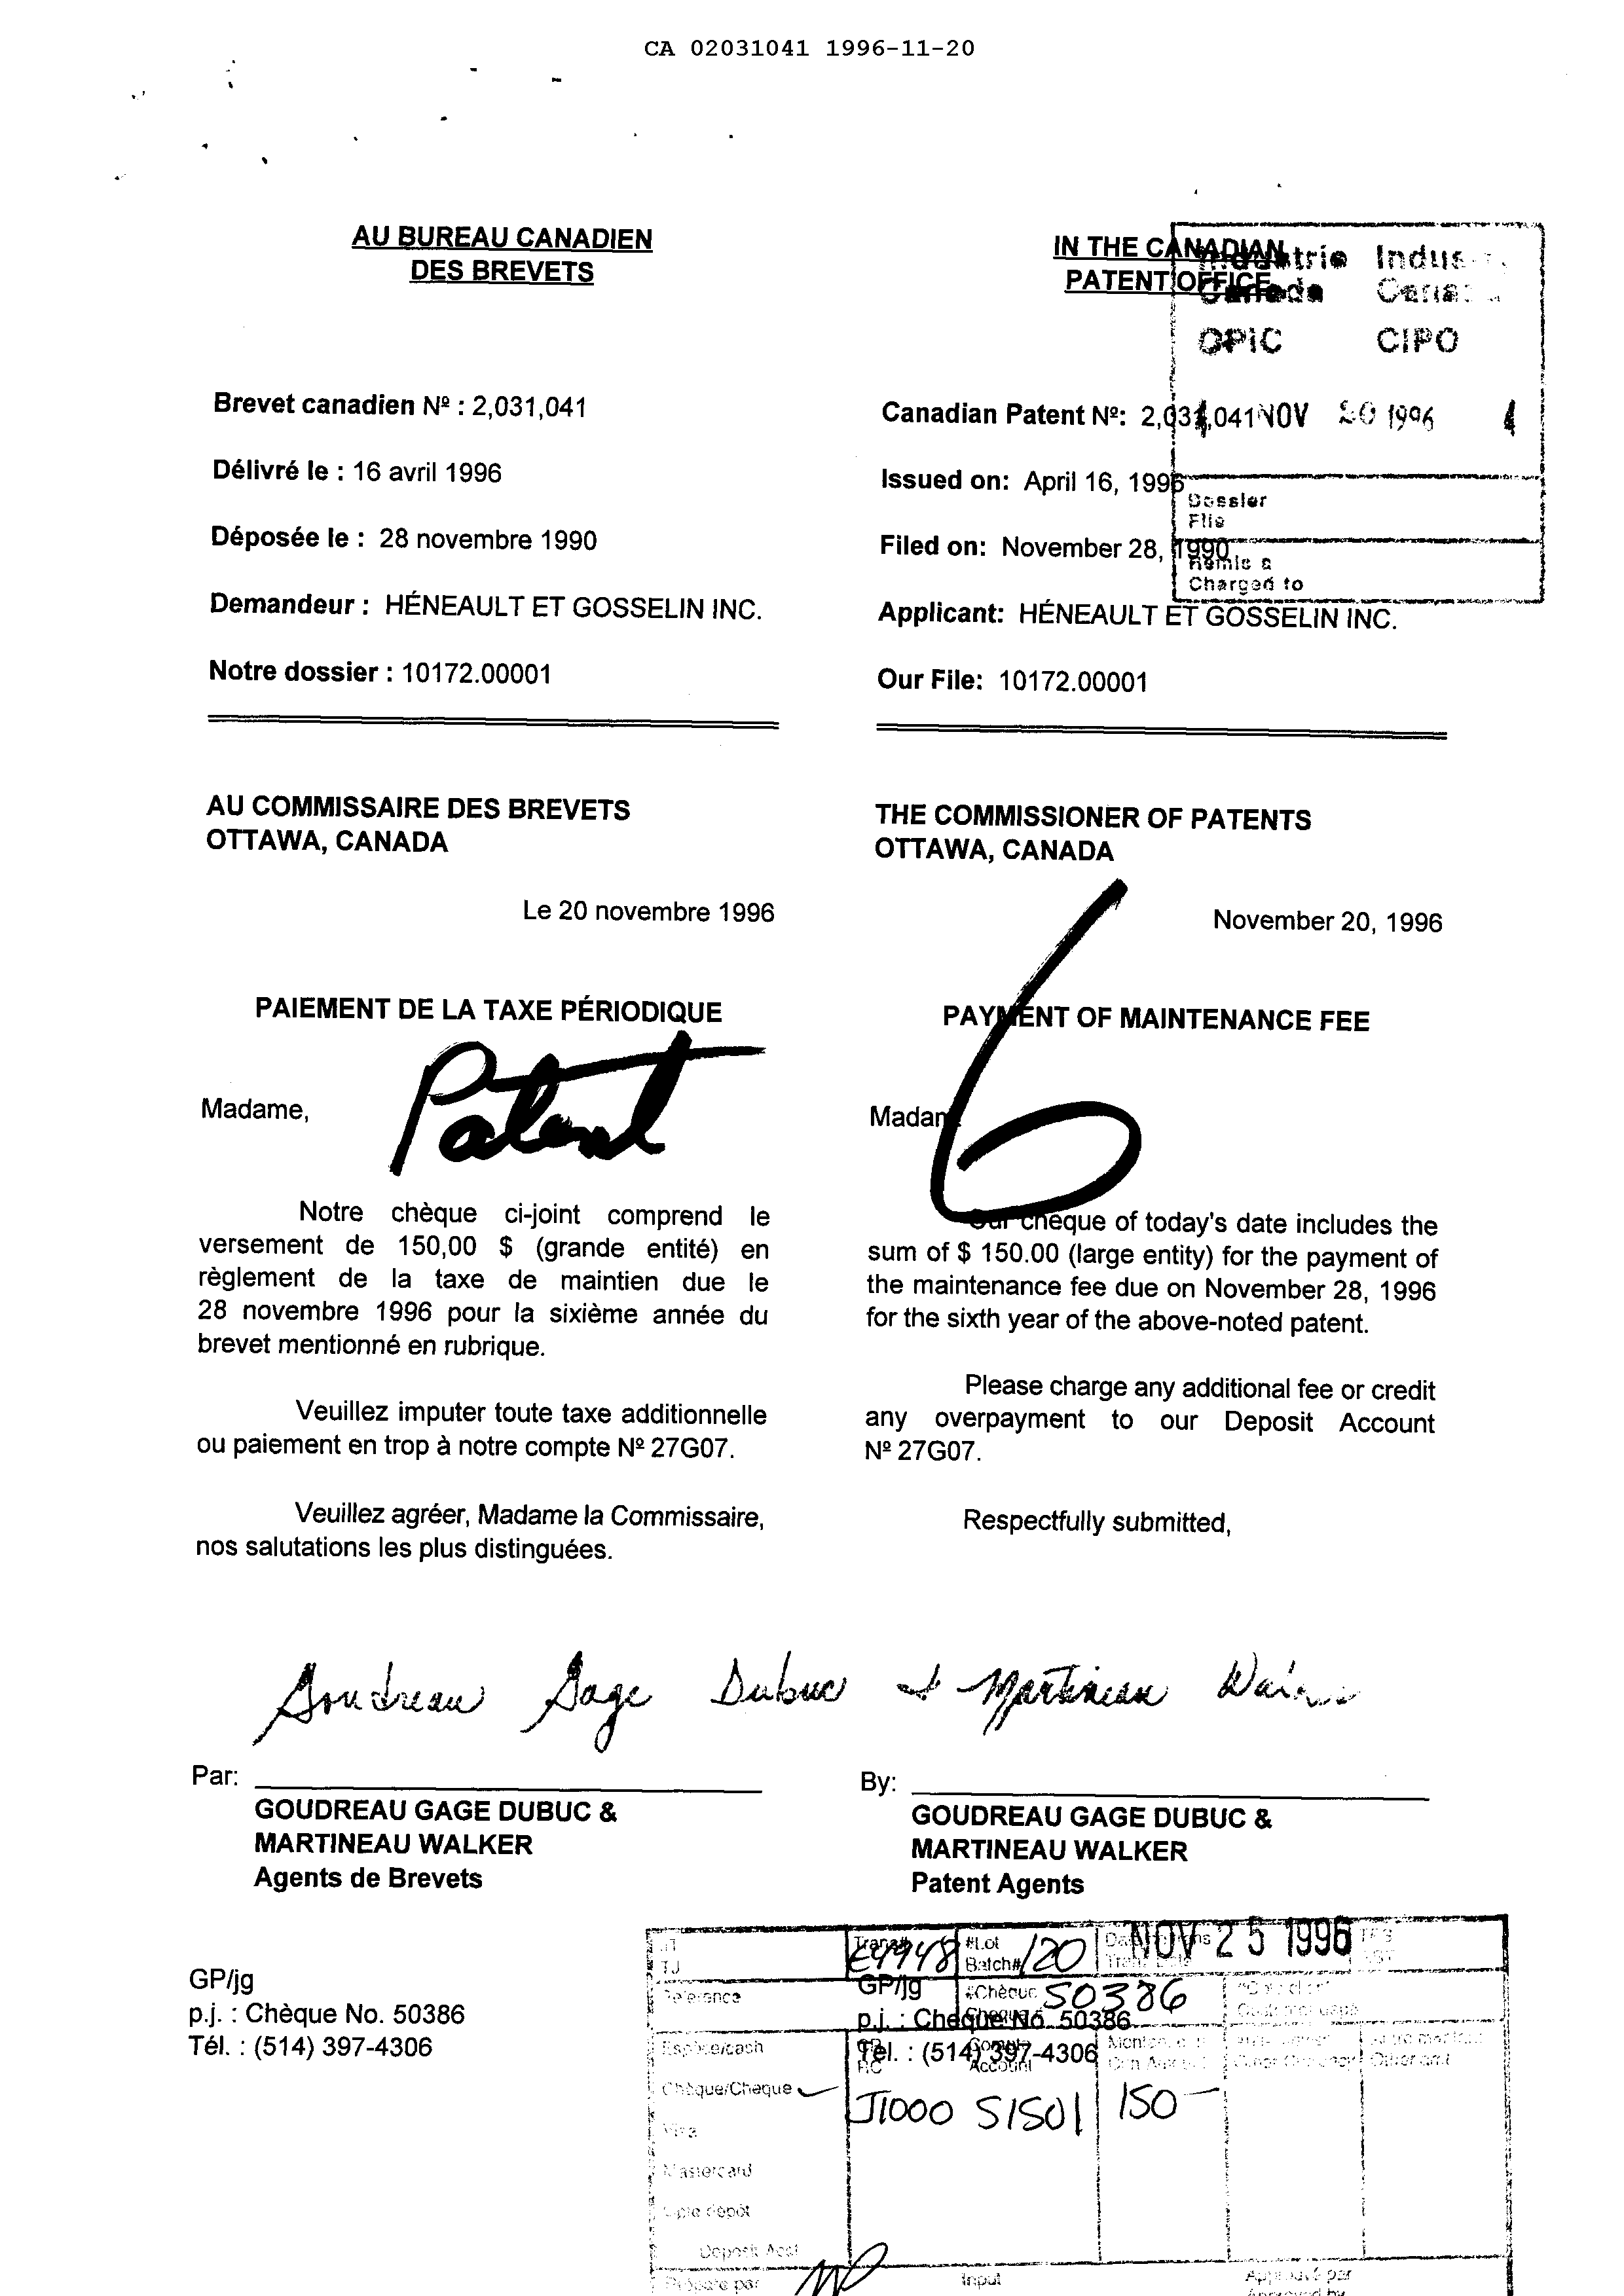 Document de brevet canadien 2031041. Taxes 19951220. Image 1 de 1